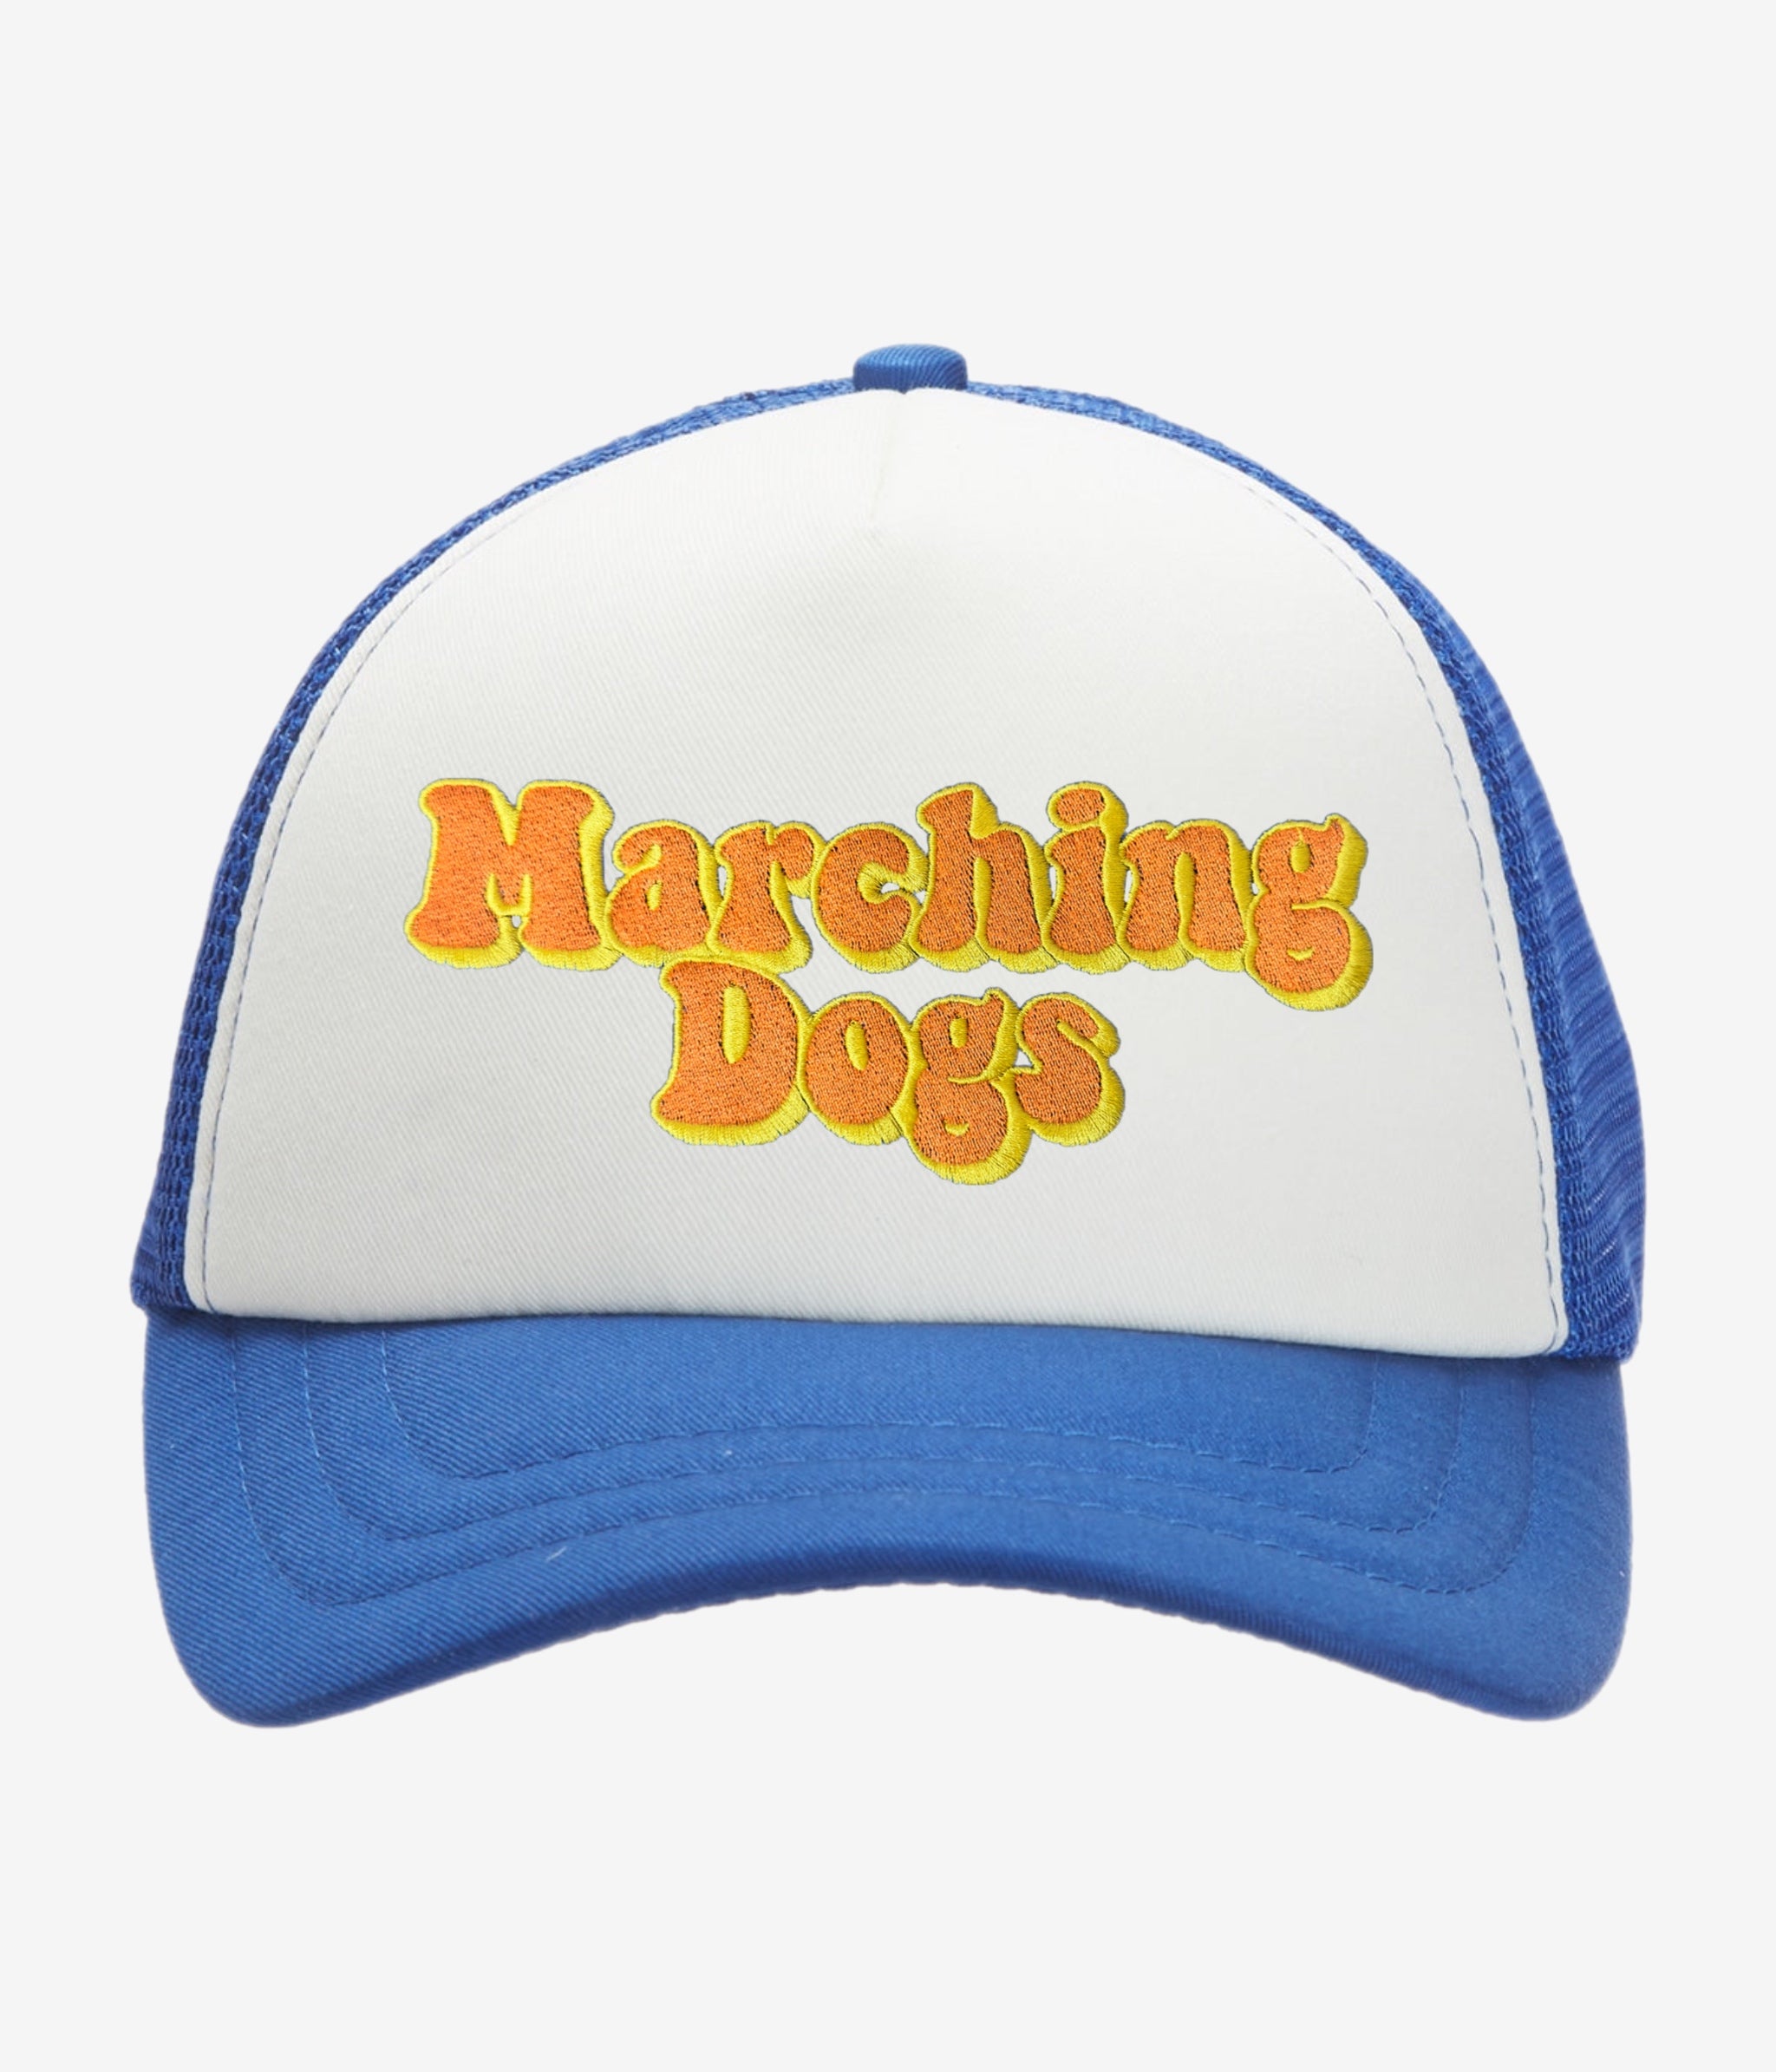 Marching Dogs 5-Panel Twill Foam Trucker Cap